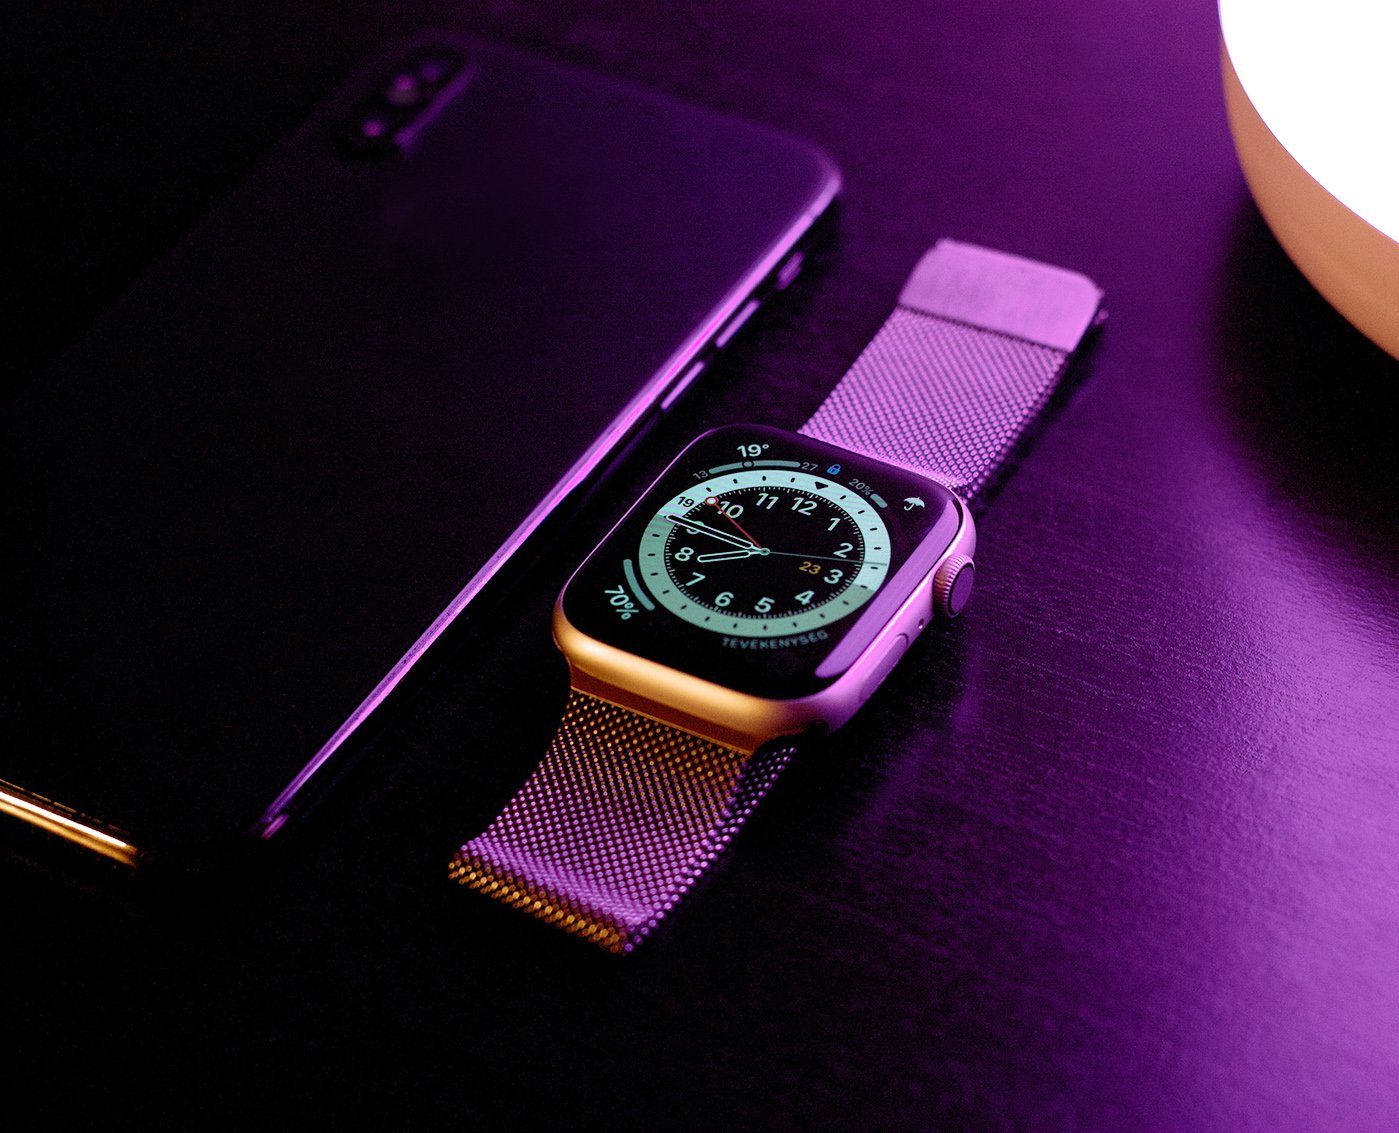 8/7/6/5/4/3/2/1/SE Ersatzarmband PRECORN Apple in Magnet Smartwatch-Armband für silber Watch mit